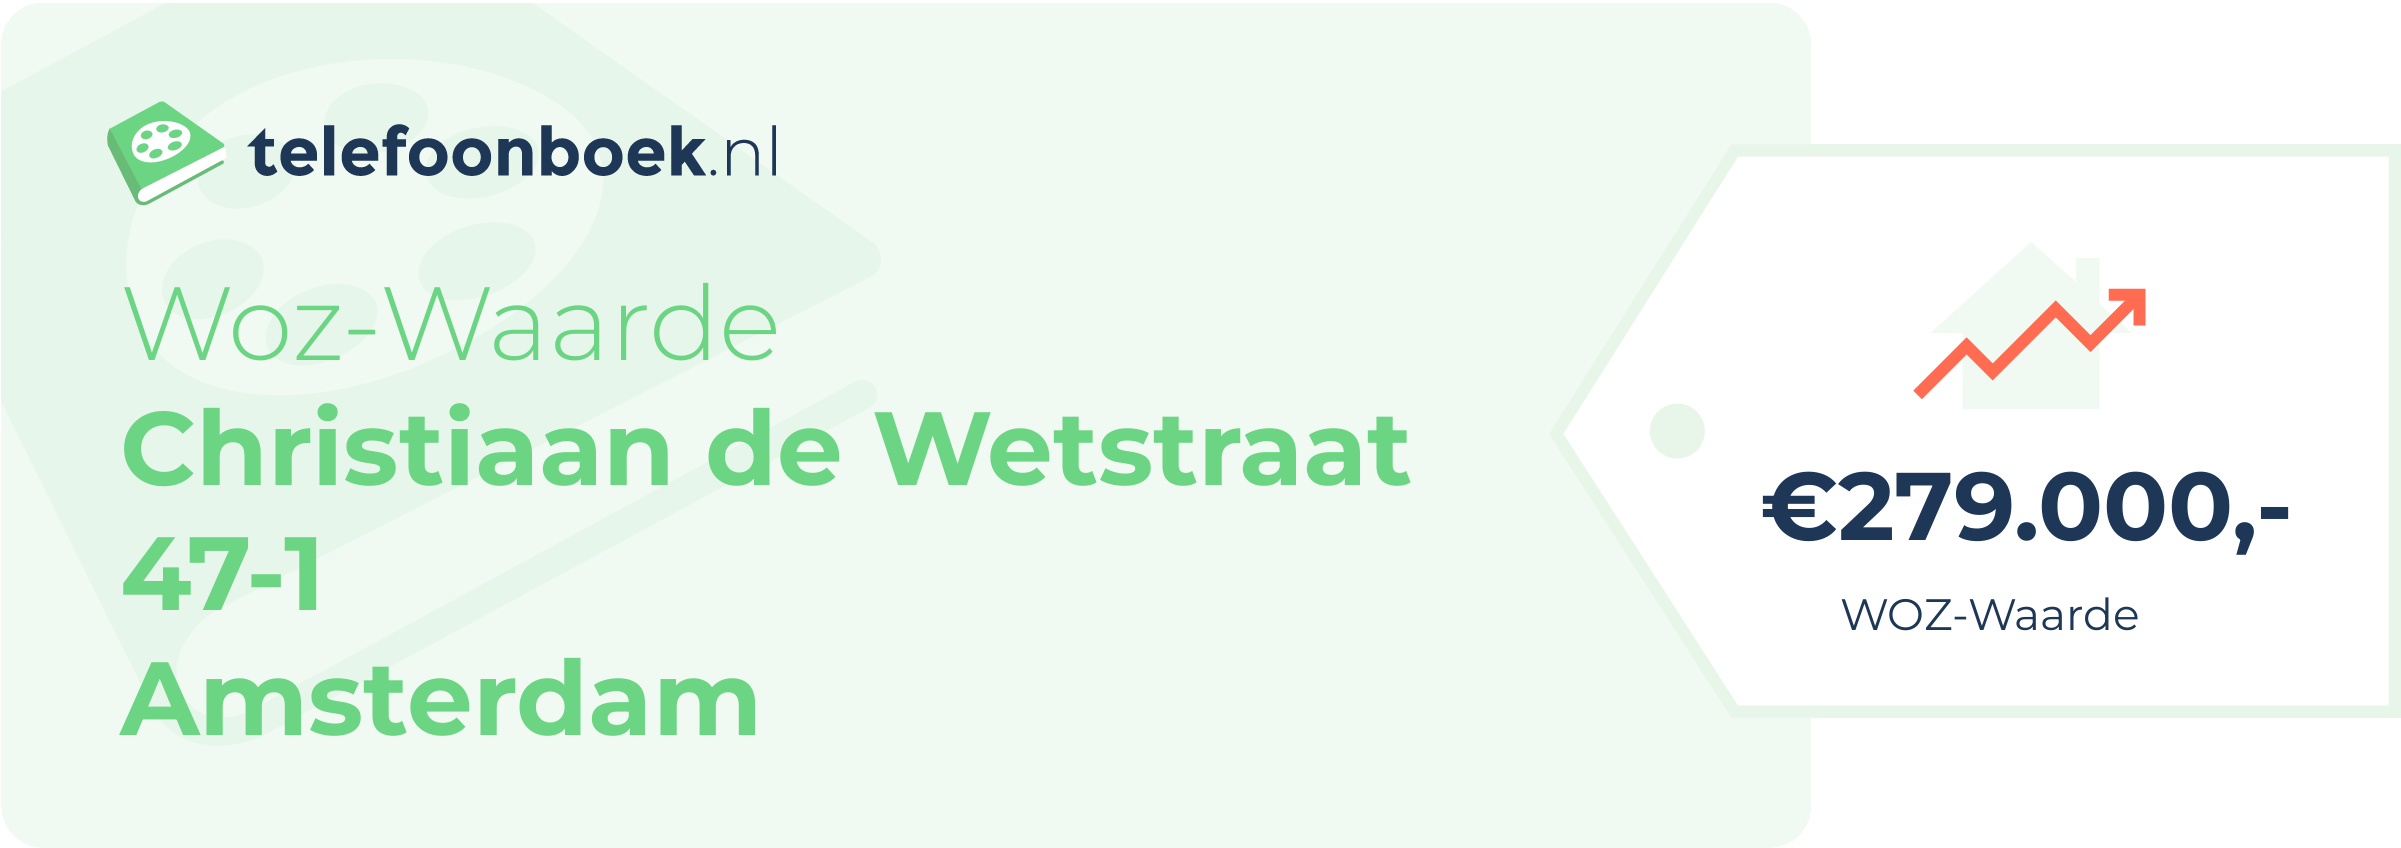 WOZ-waarde Christiaan De Wetstraat 47-1 Amsterdam